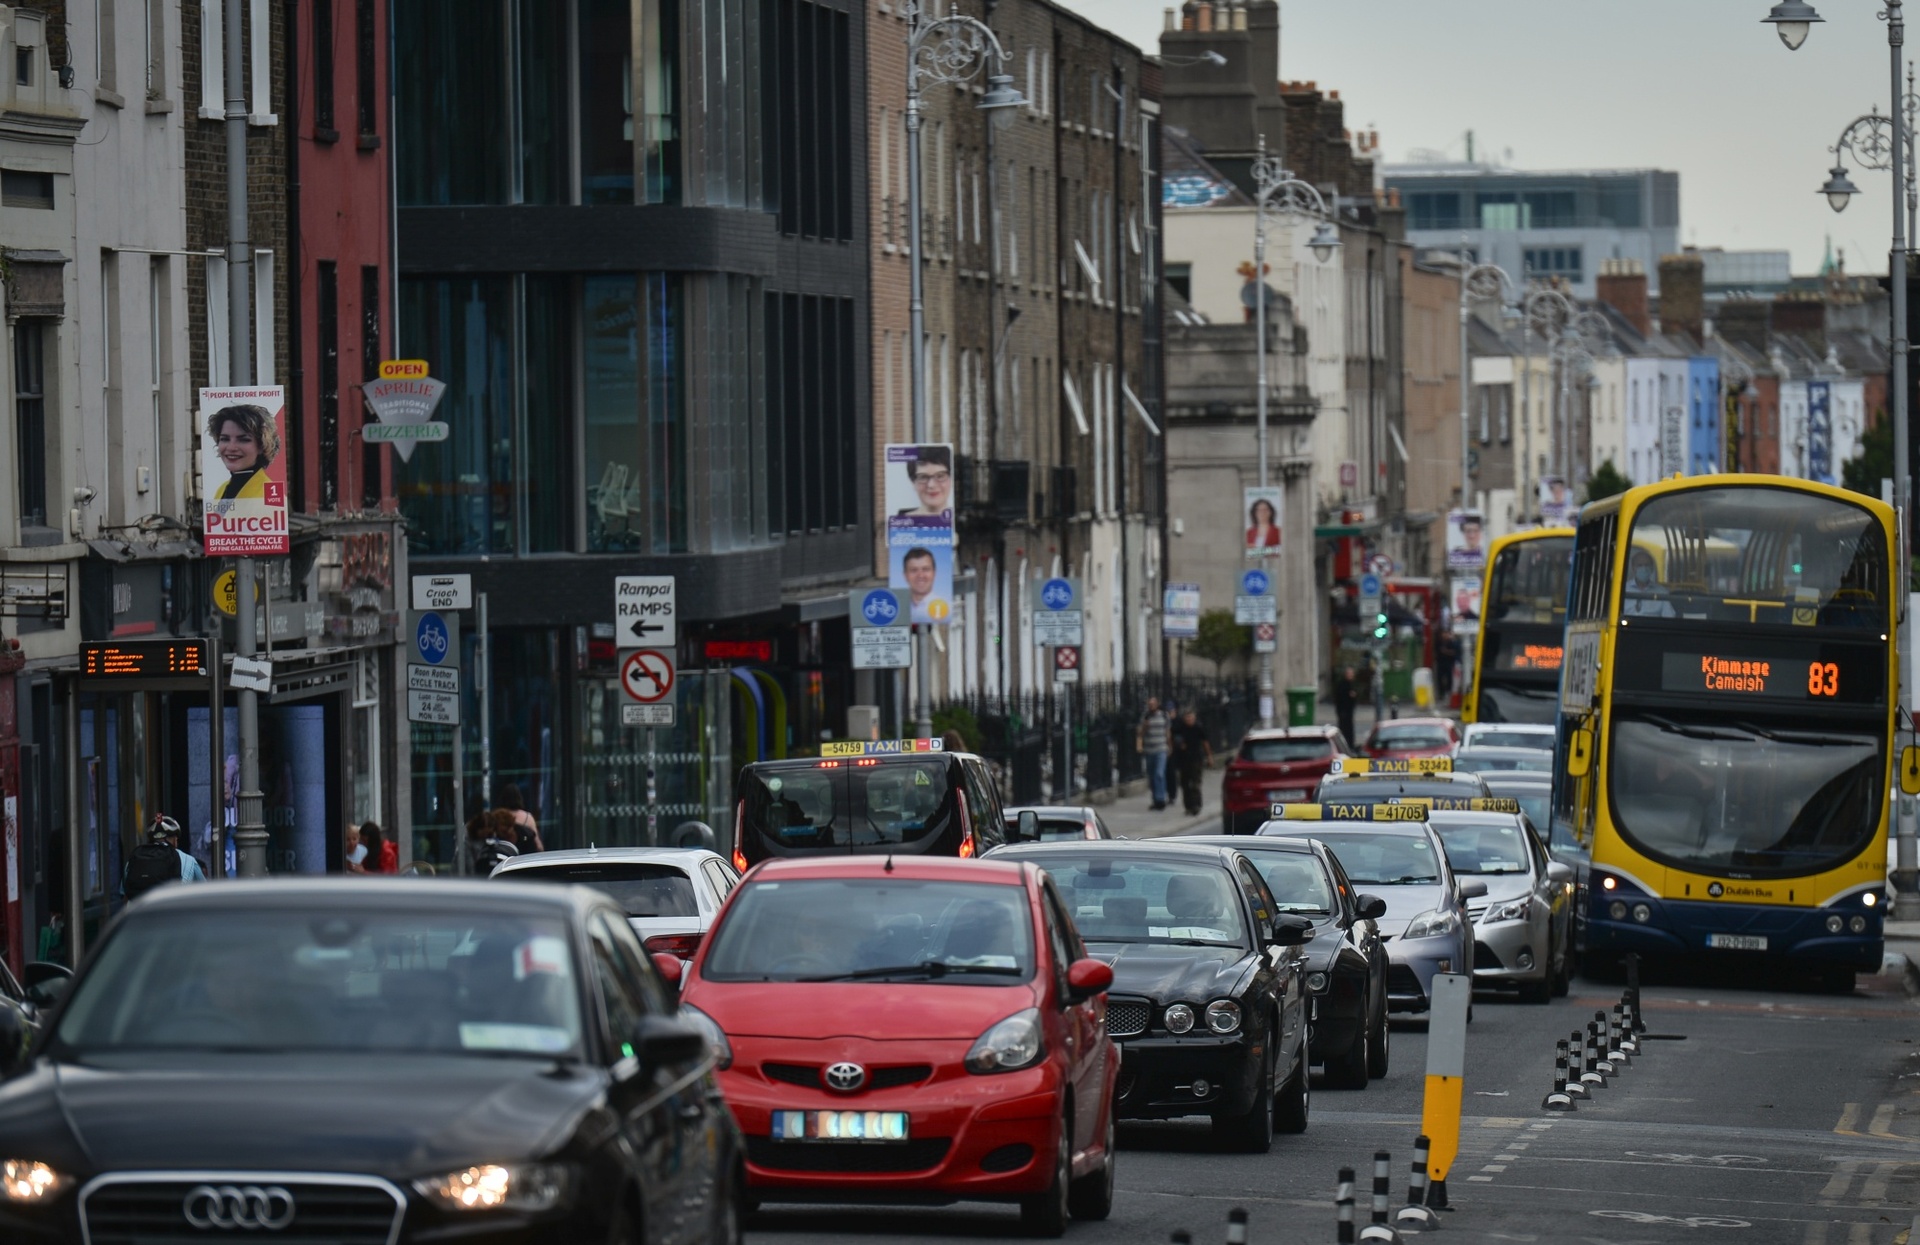 Giao thông tại Dublin, Ireland từ lâu đã gặp phải tình trạng thường xuyên ùn tắc, nhất là tại khu trung tâm thành phố. Ảnh: Getty Images